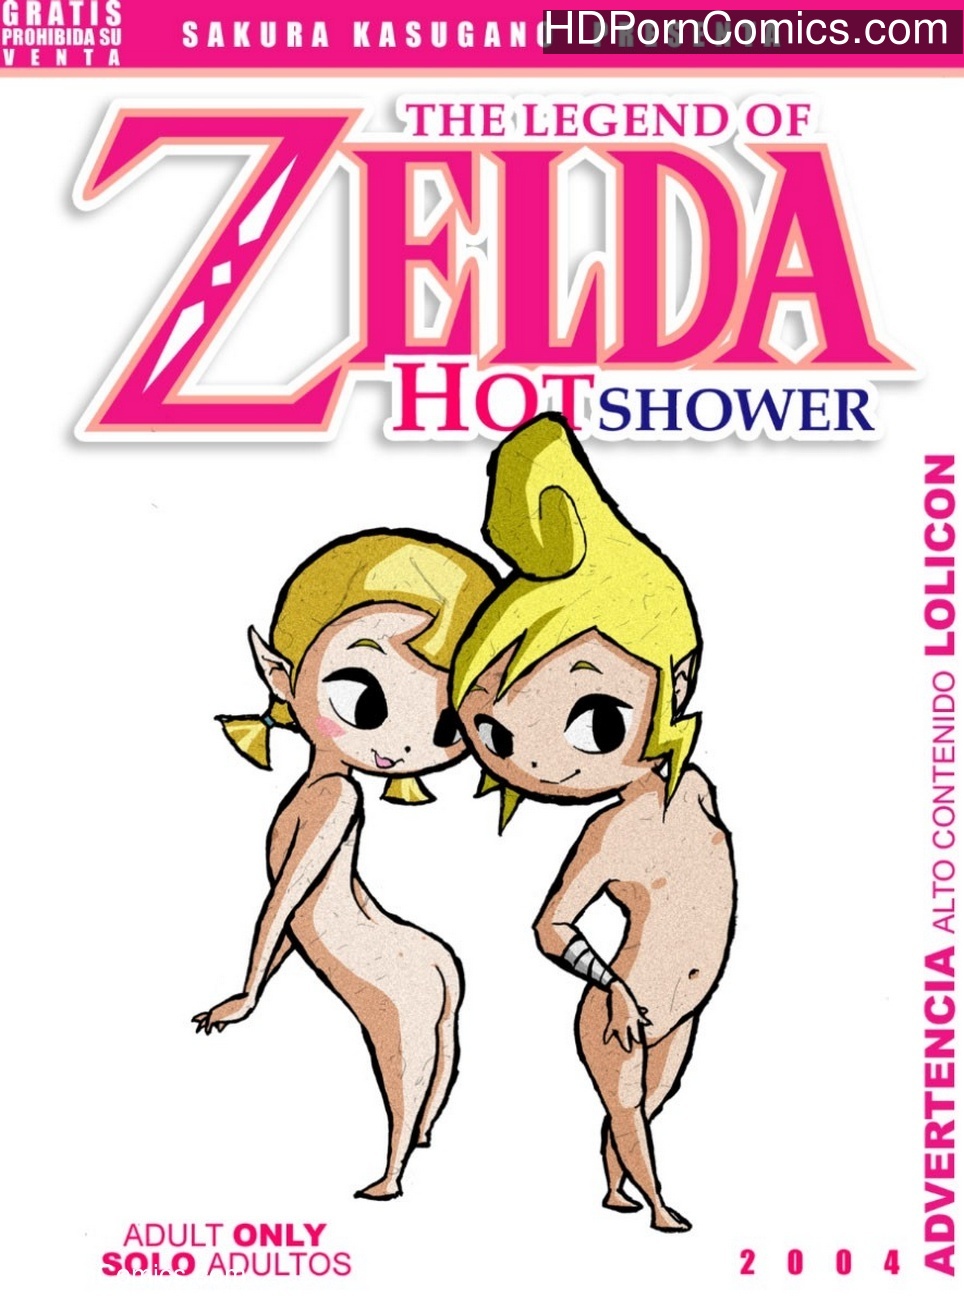 Cartoon Shower Sex - Hot Shower Sex Comic - HD Porn Comics